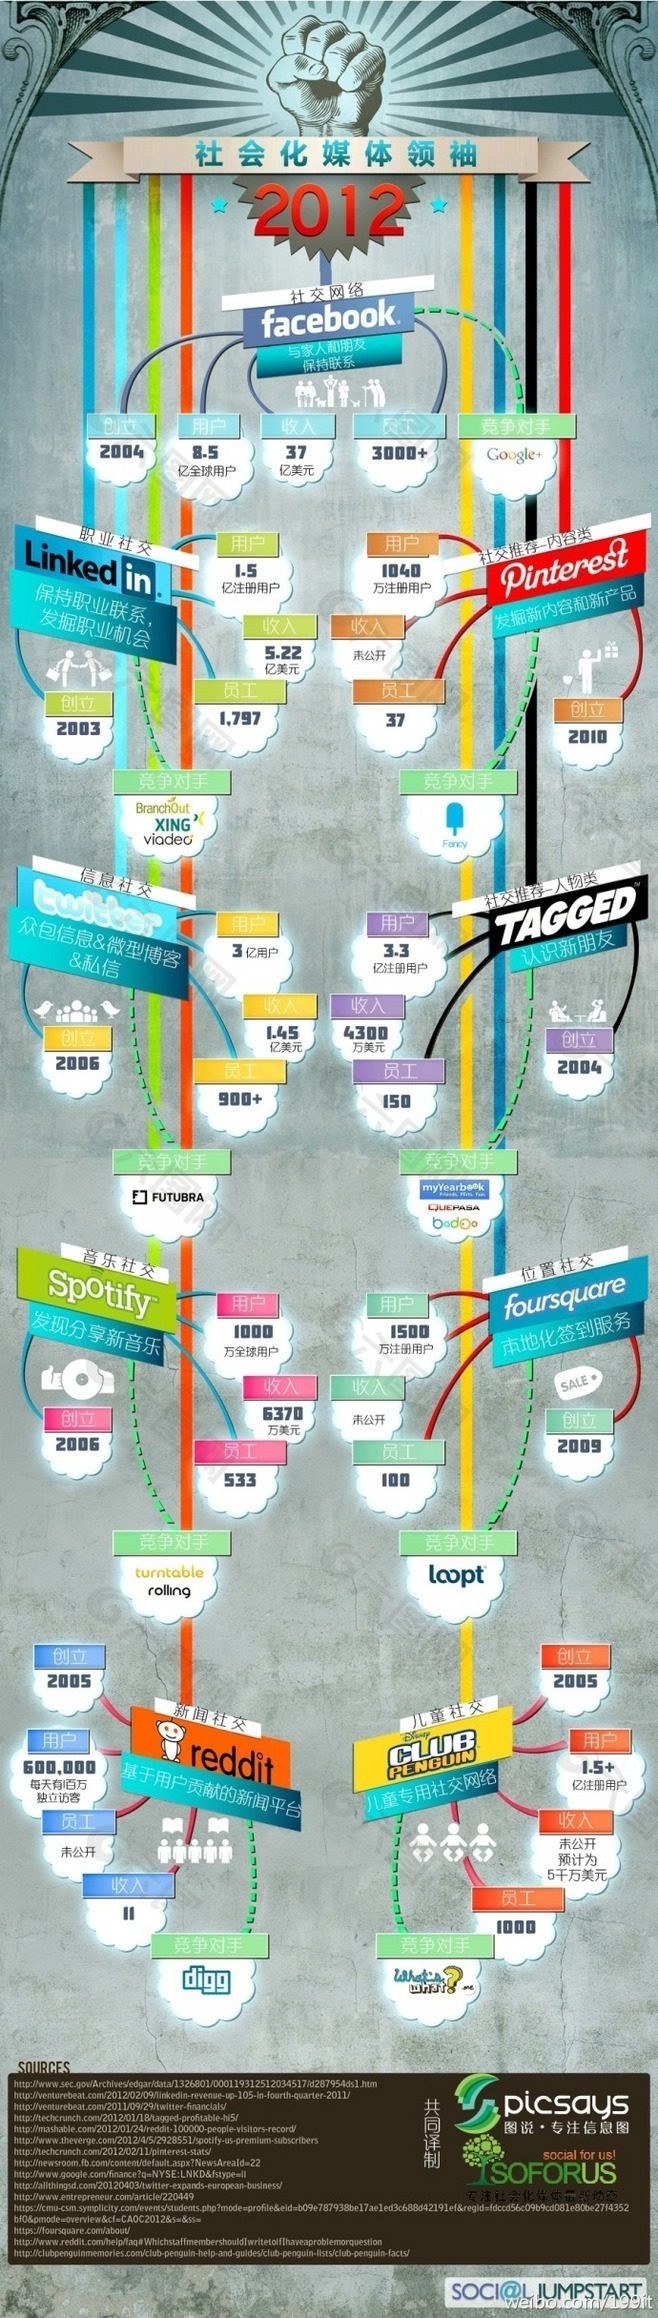 树枝图展开分类-社会化媒体领袖2012